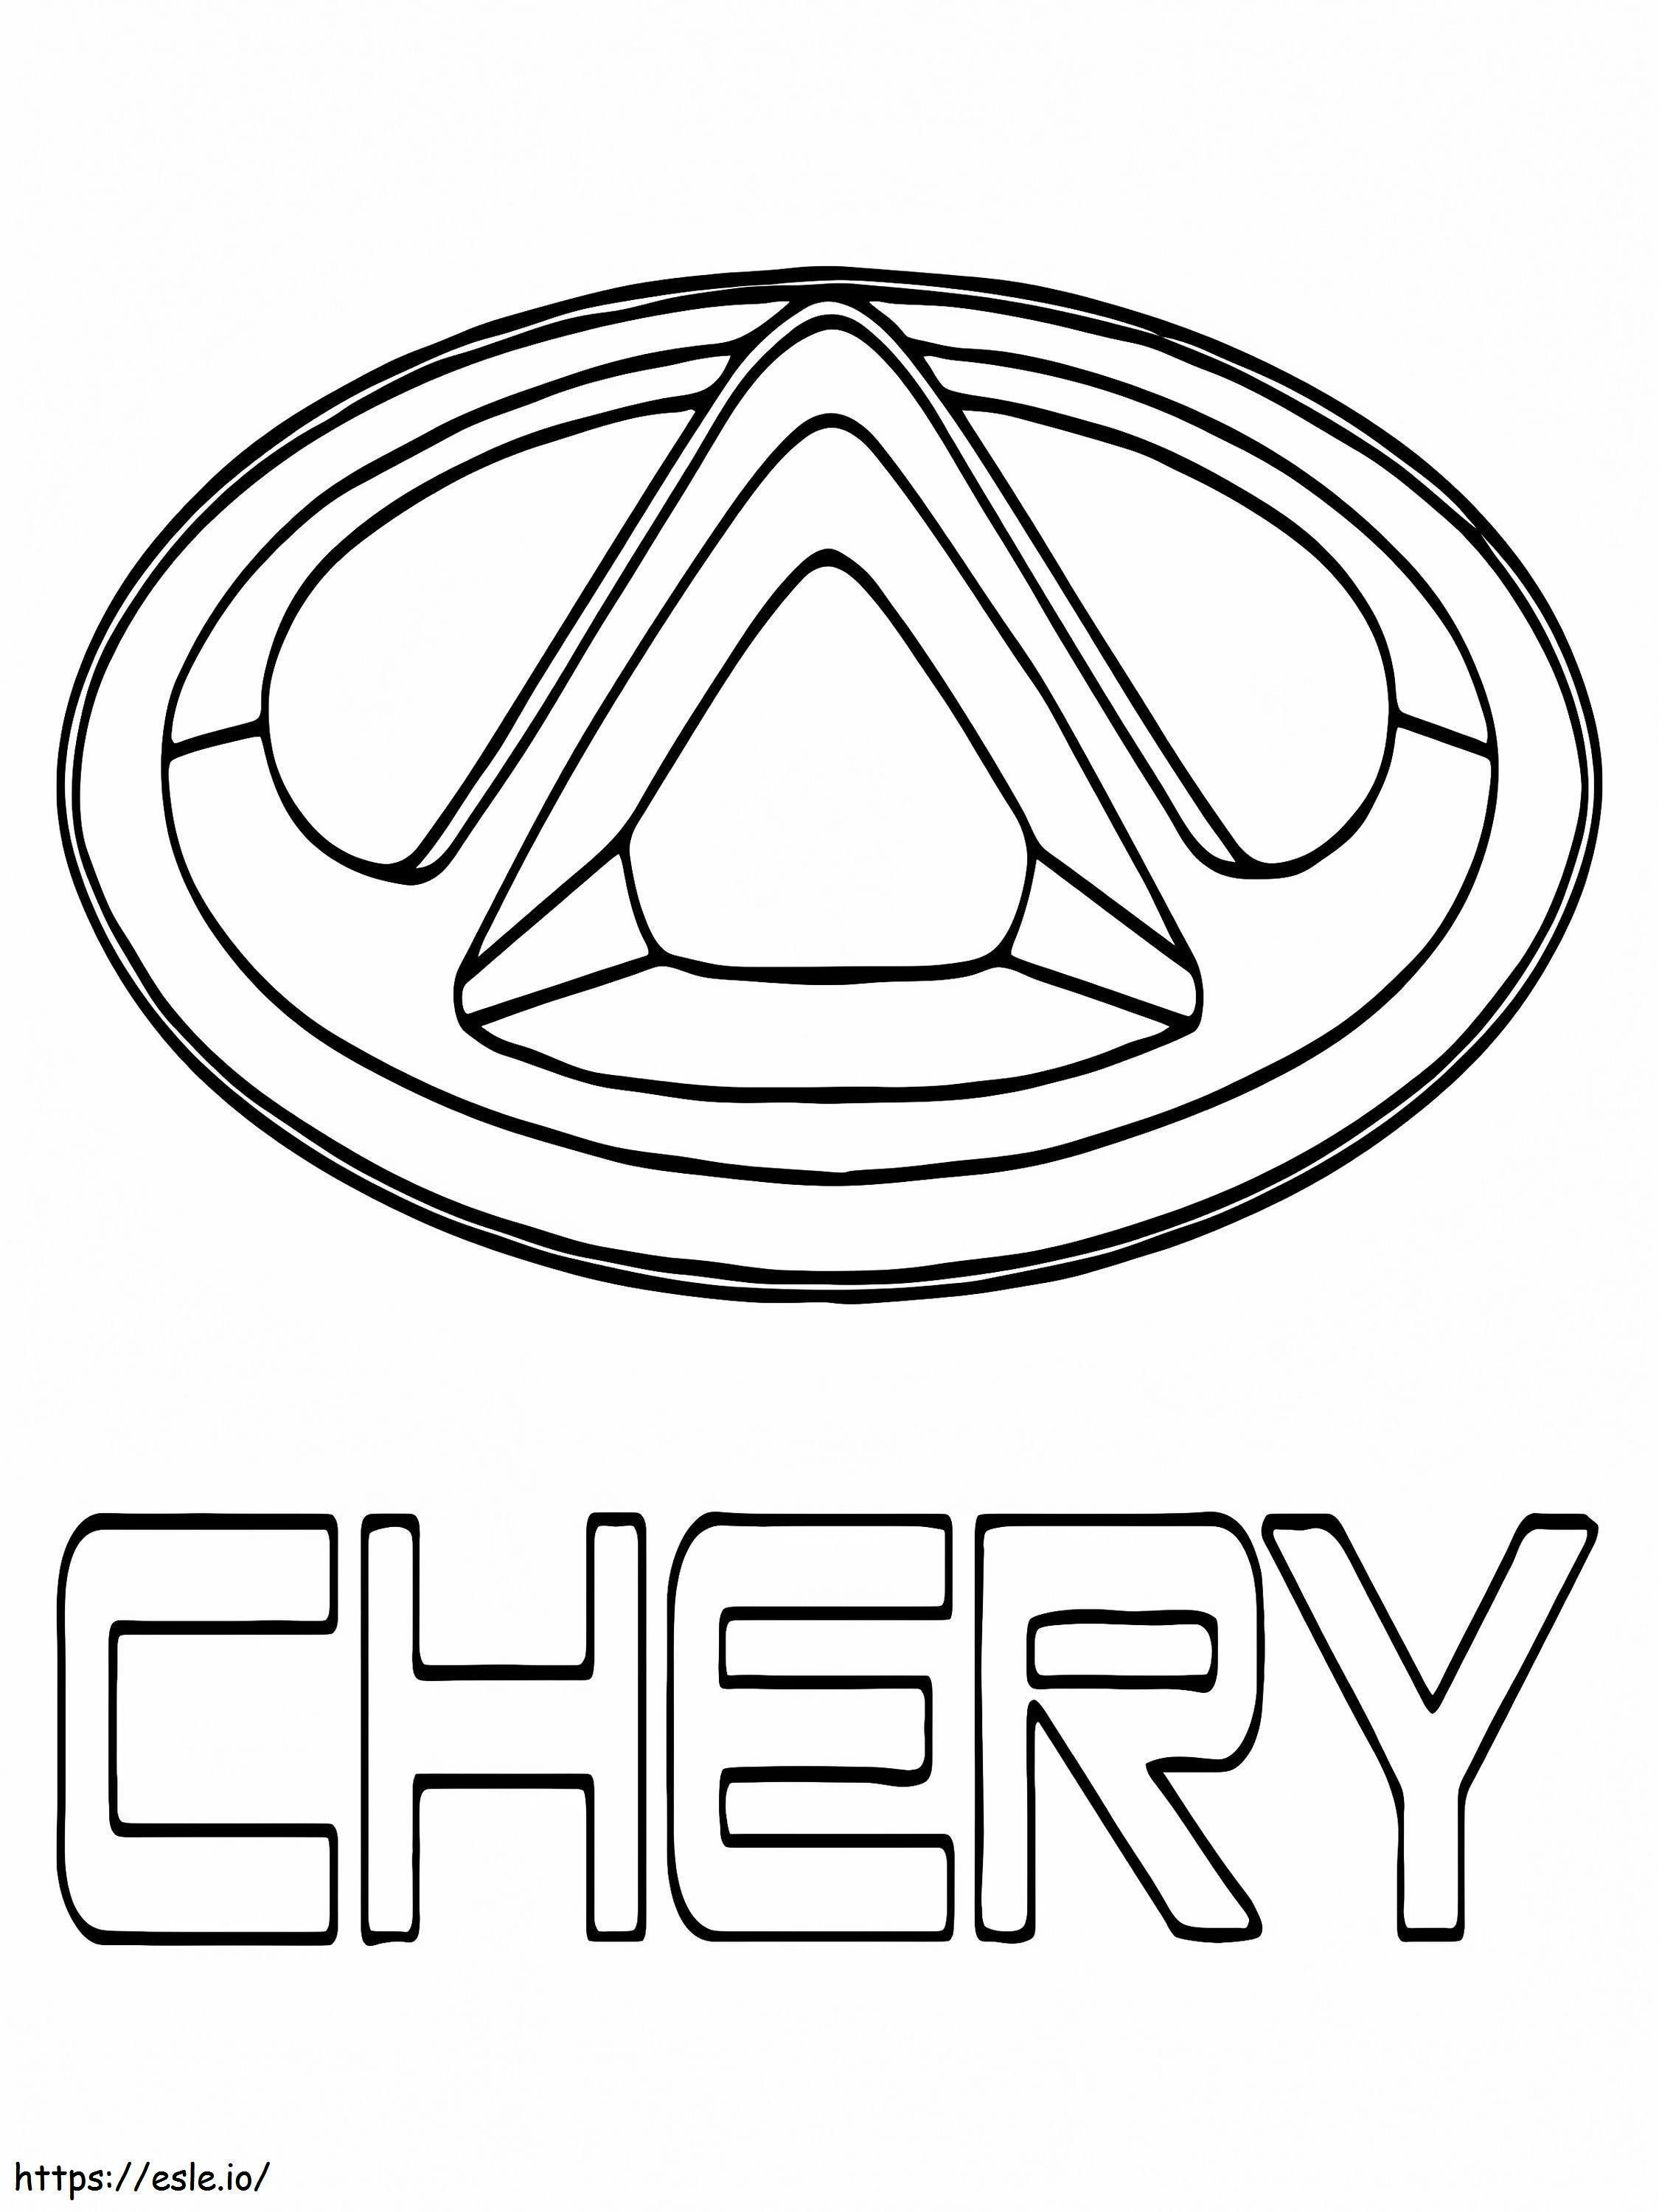 Logotipo Do Carro Chery para colorir